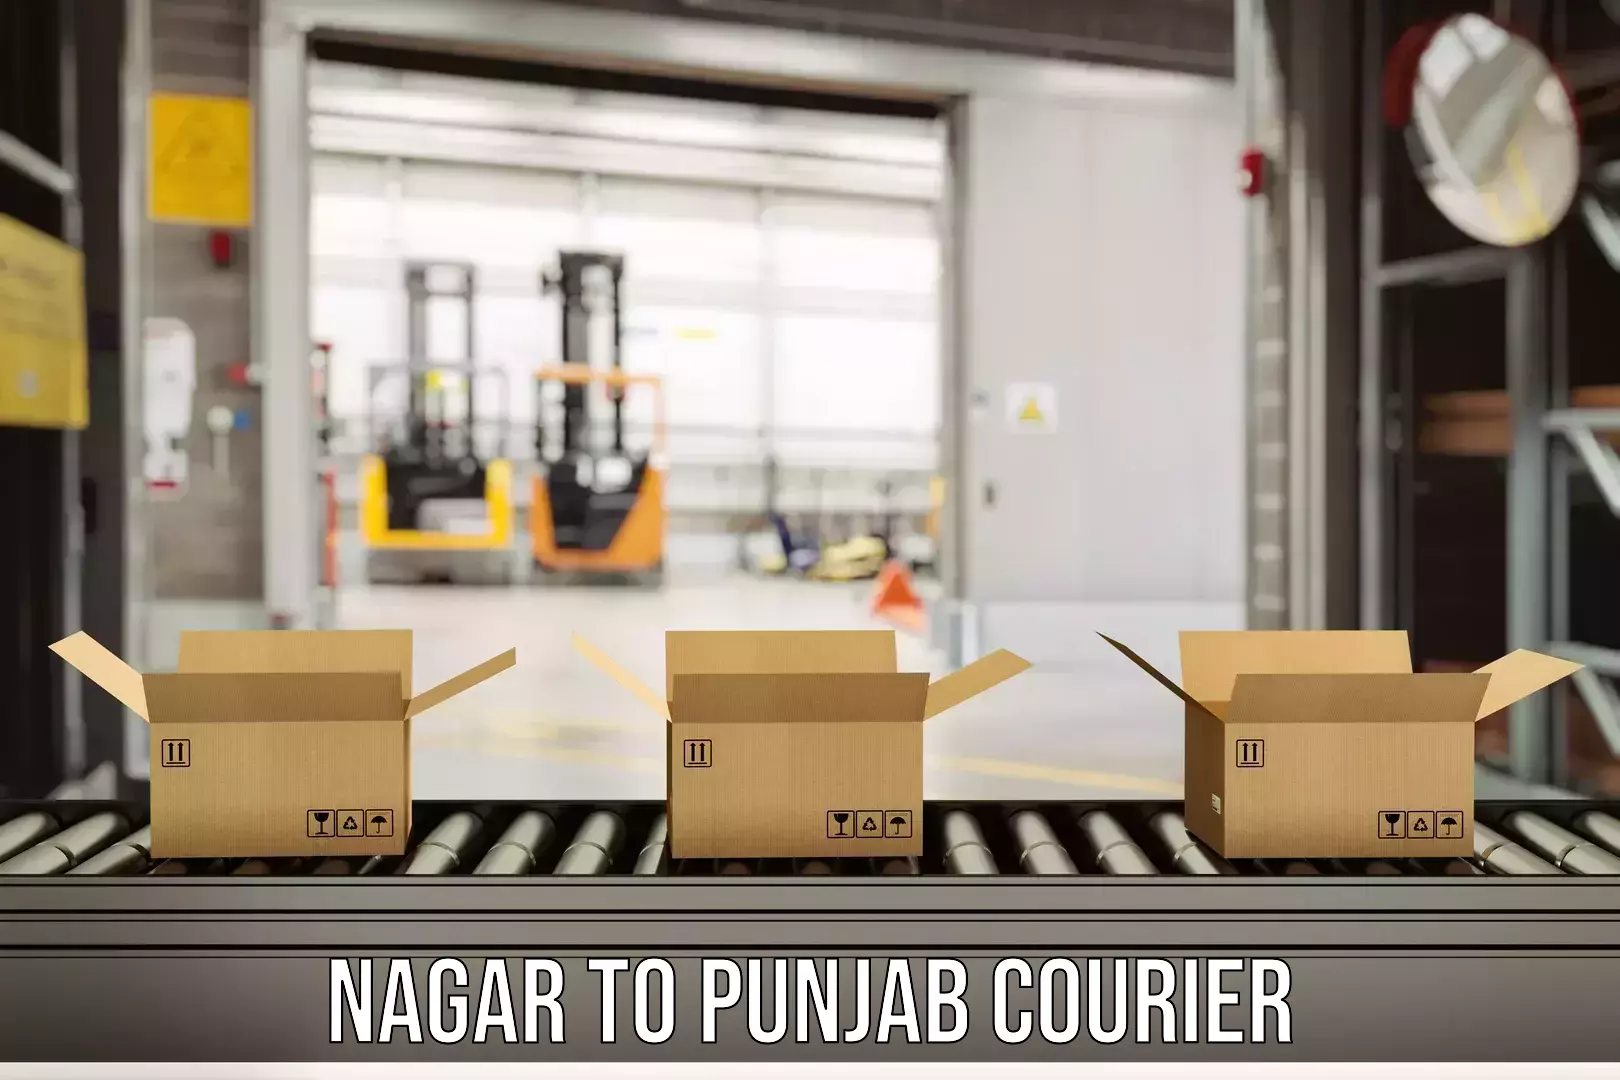 Expedited shipping methods Nagar to Punjab